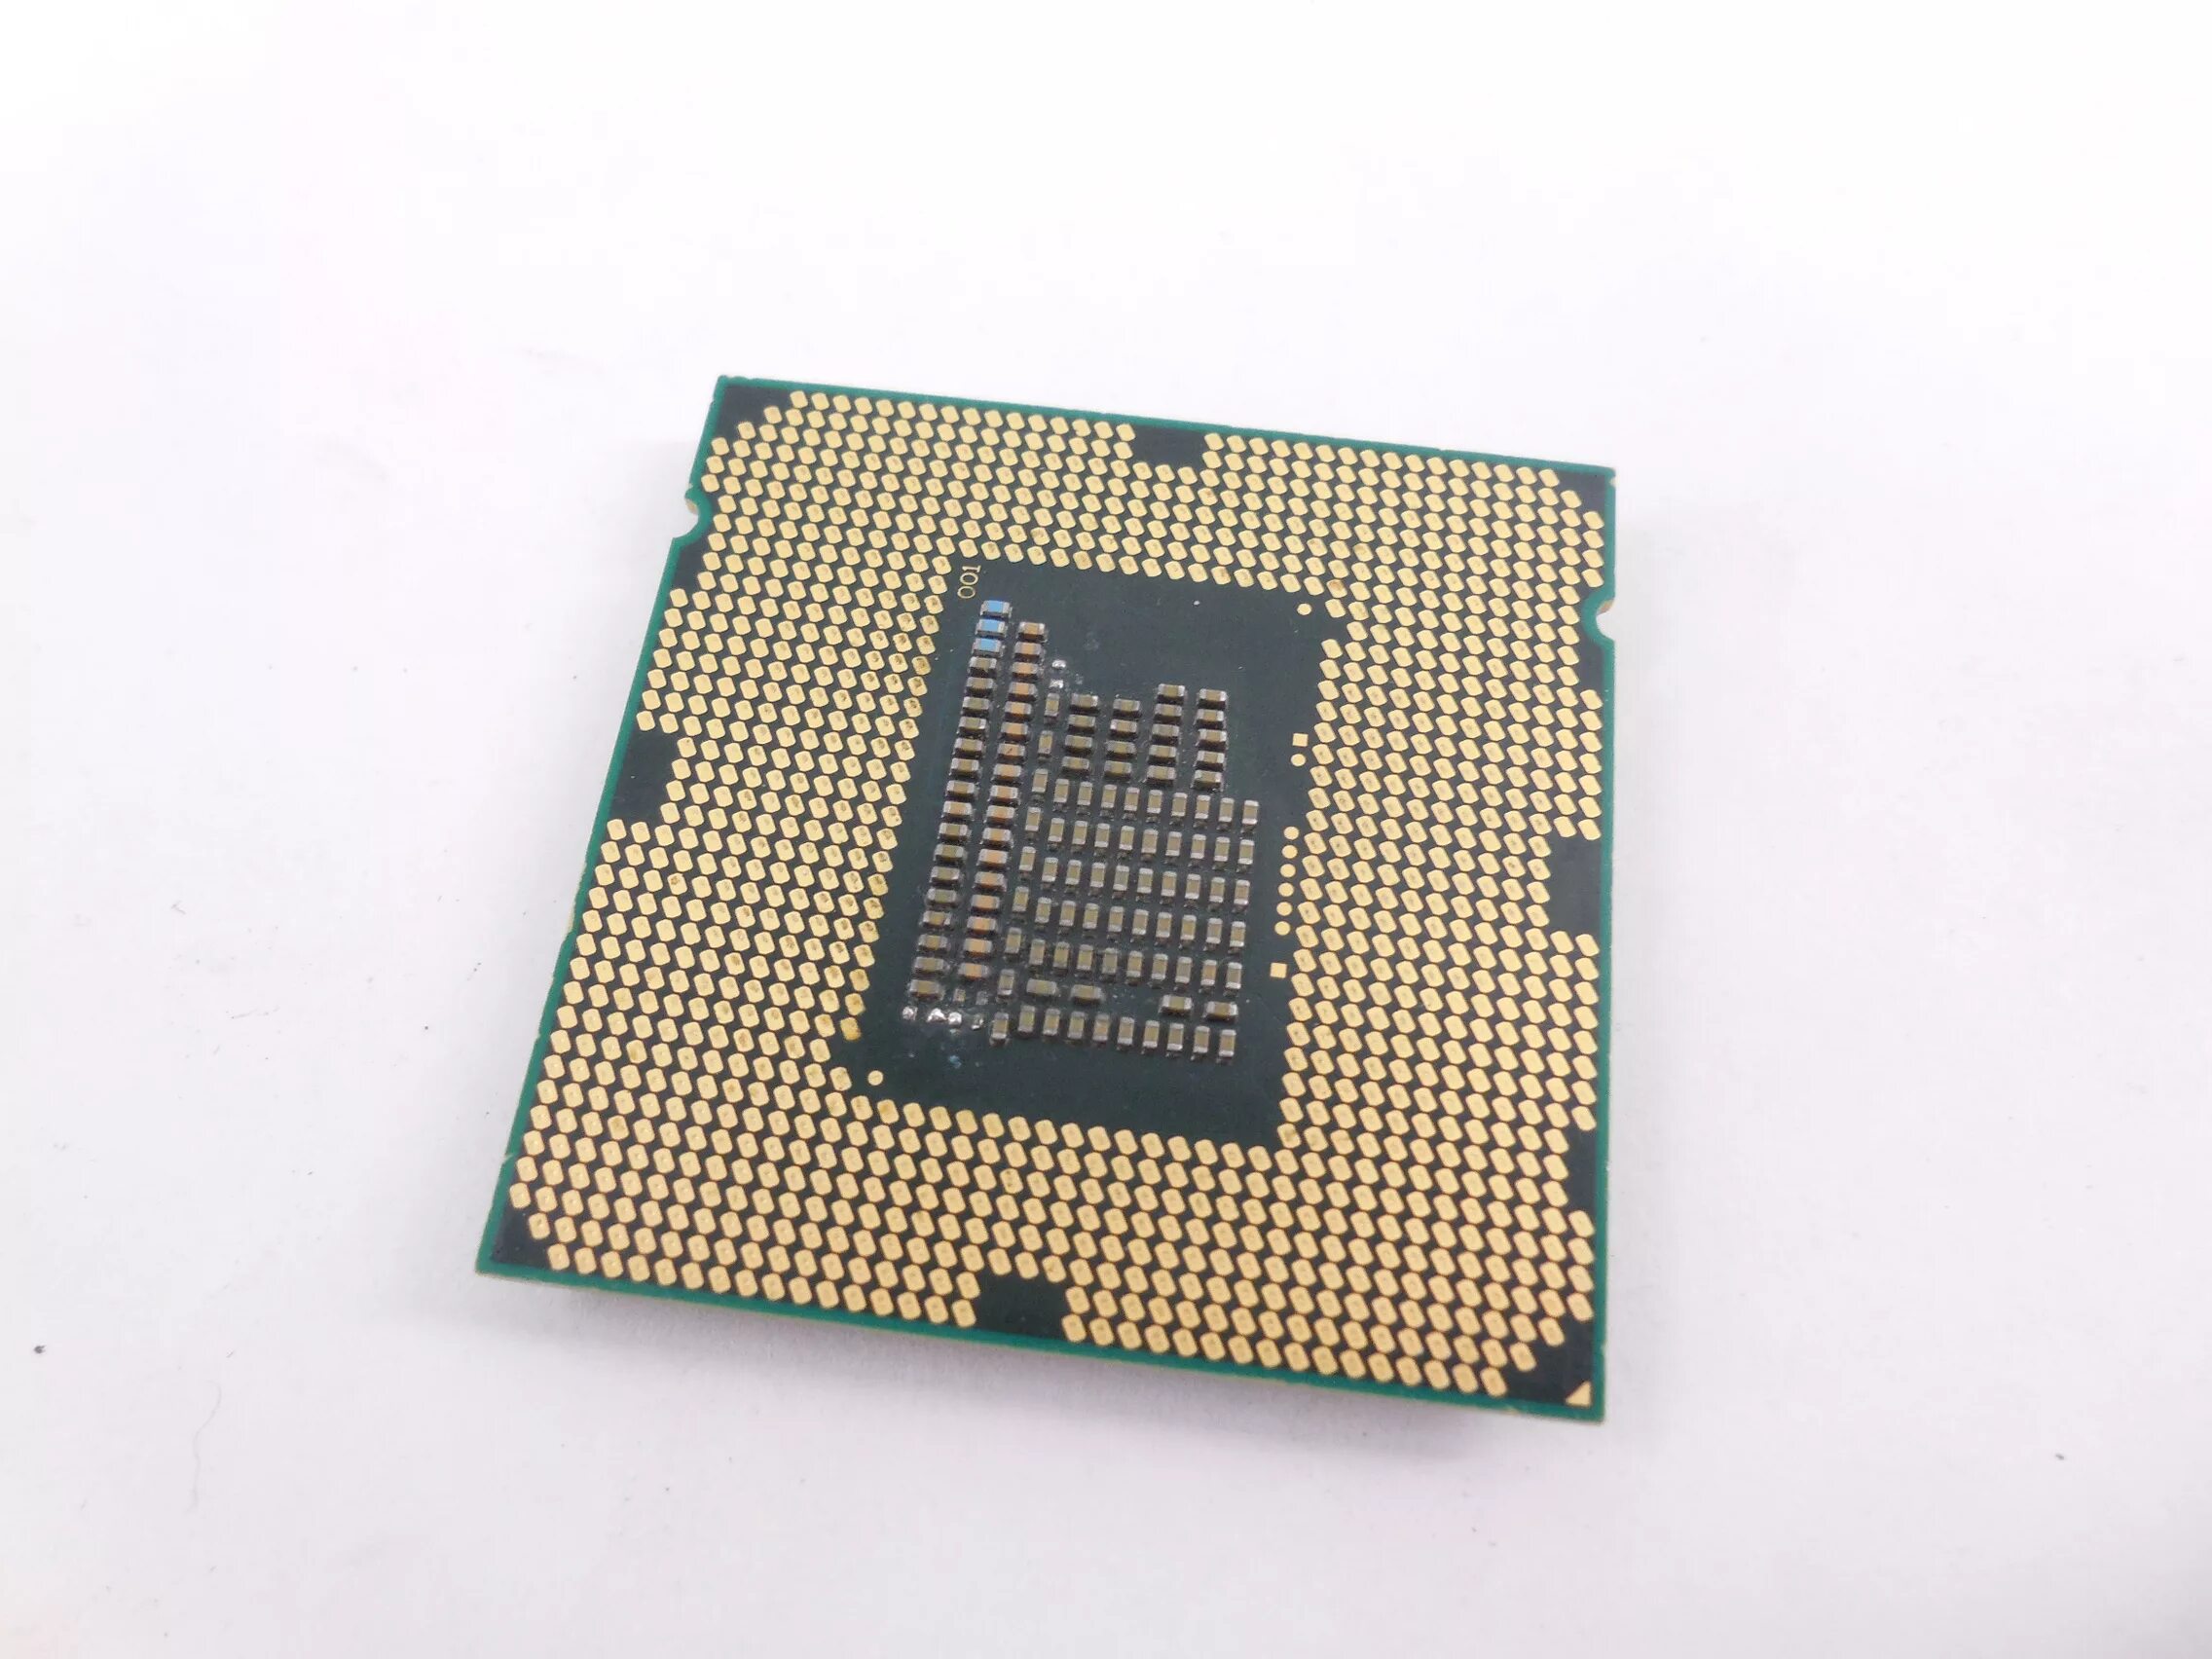 Процессоры на lga 1155. Процессор Intel Pentium g840. Intel Pentium g840 lga1155, 2 x 2800 МГЦ. Intel Pentium 1155 Socket. Процессор Intel Pentium g840 2.80GHZ.